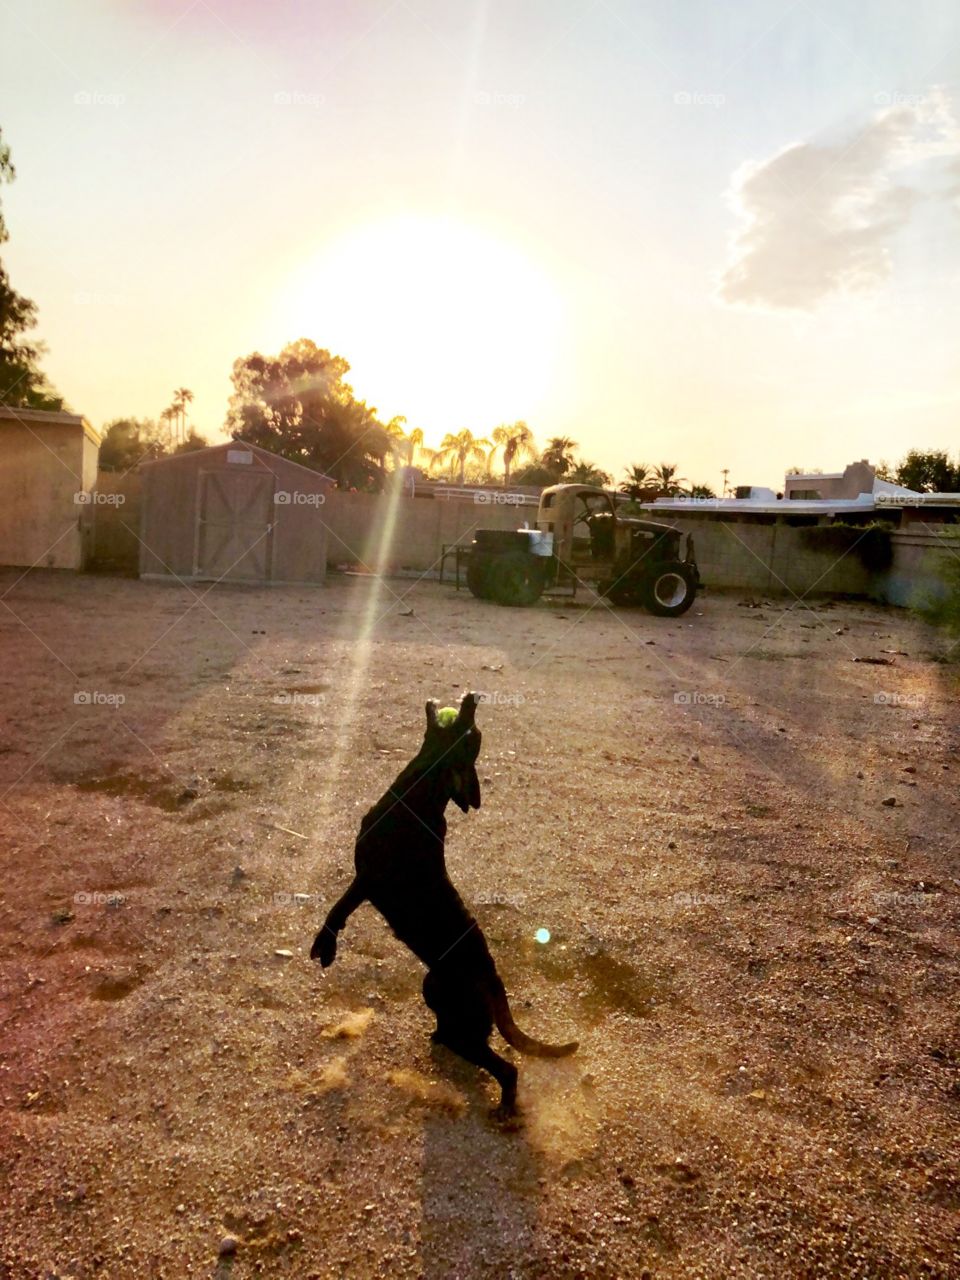 Sera, a black Labrador Retriever, catching her ball during a game of fetch 